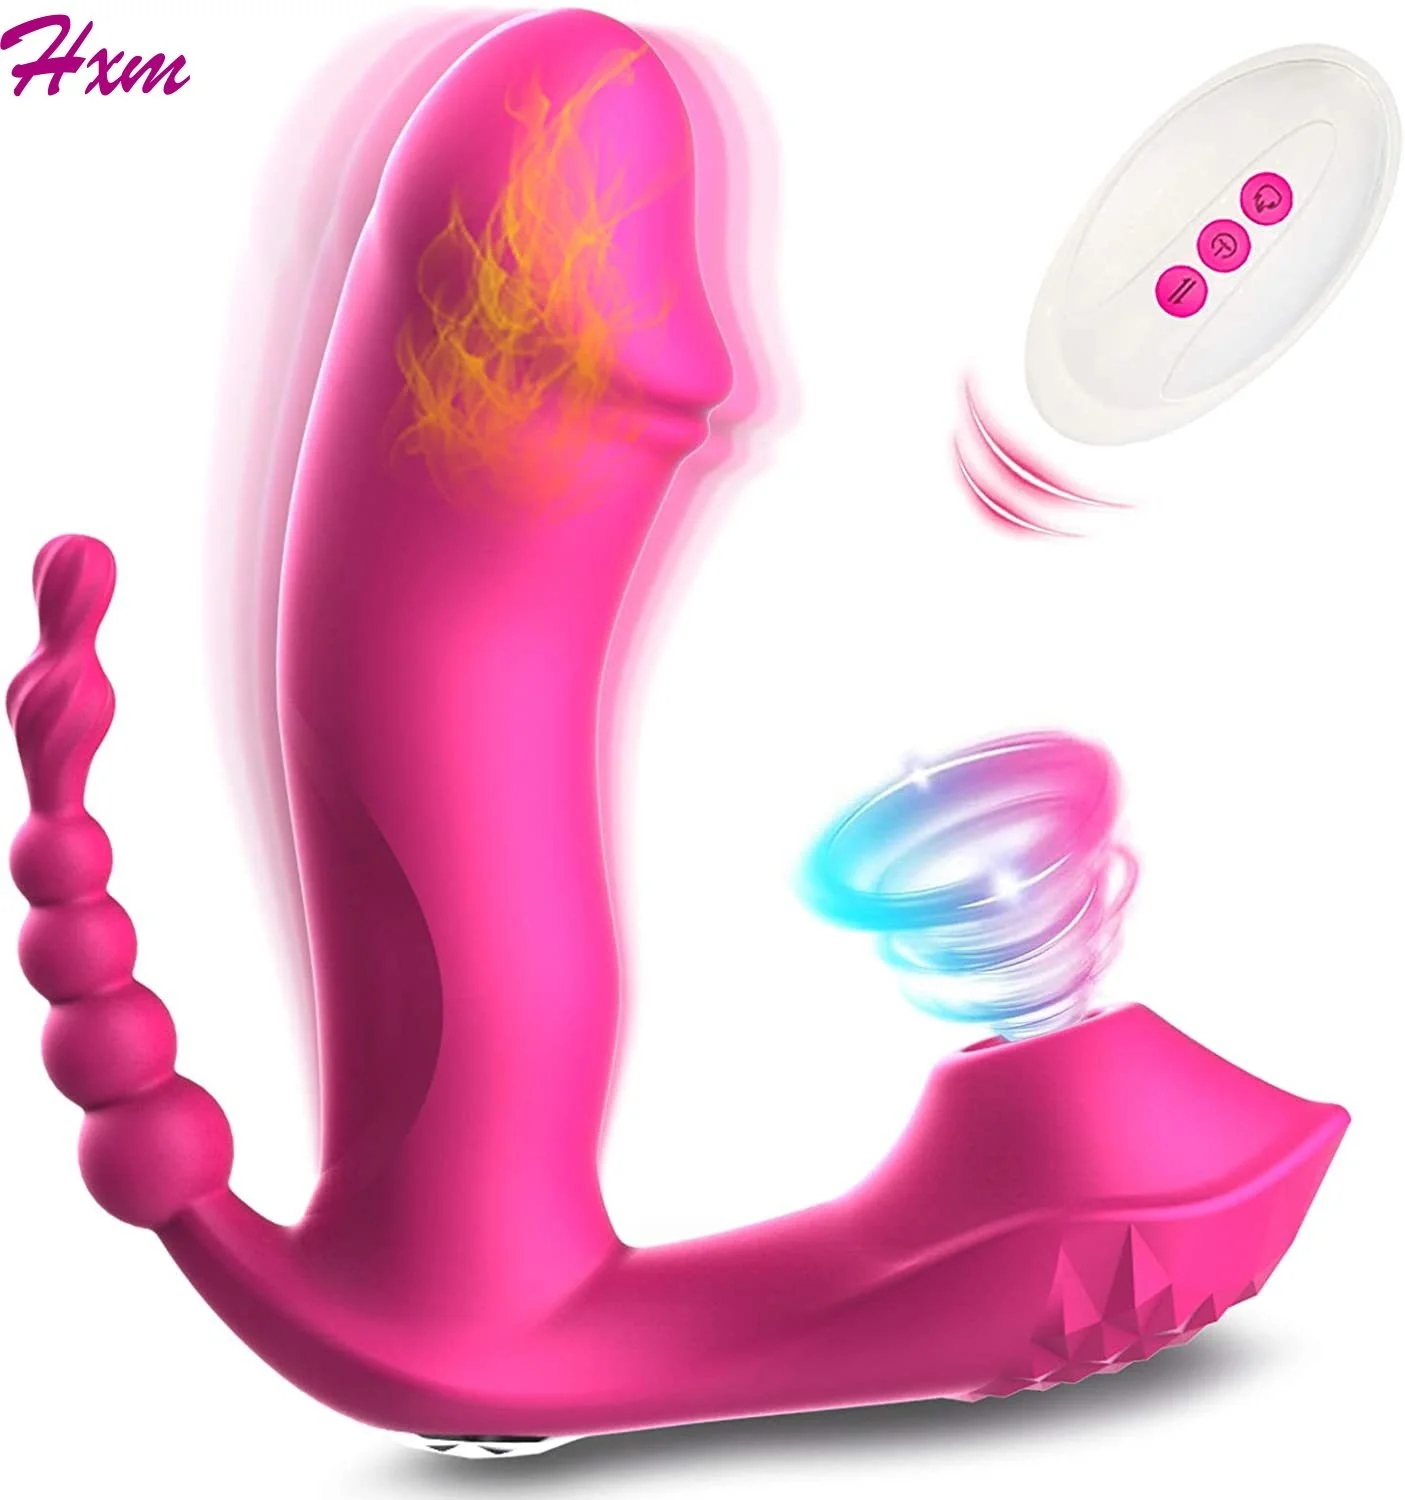 

Vibrador de succión 3 en 1 para mujer, estimulador de clítoris y punto G, consolador Vaginal y Anal para orgasmo, juguete sexual